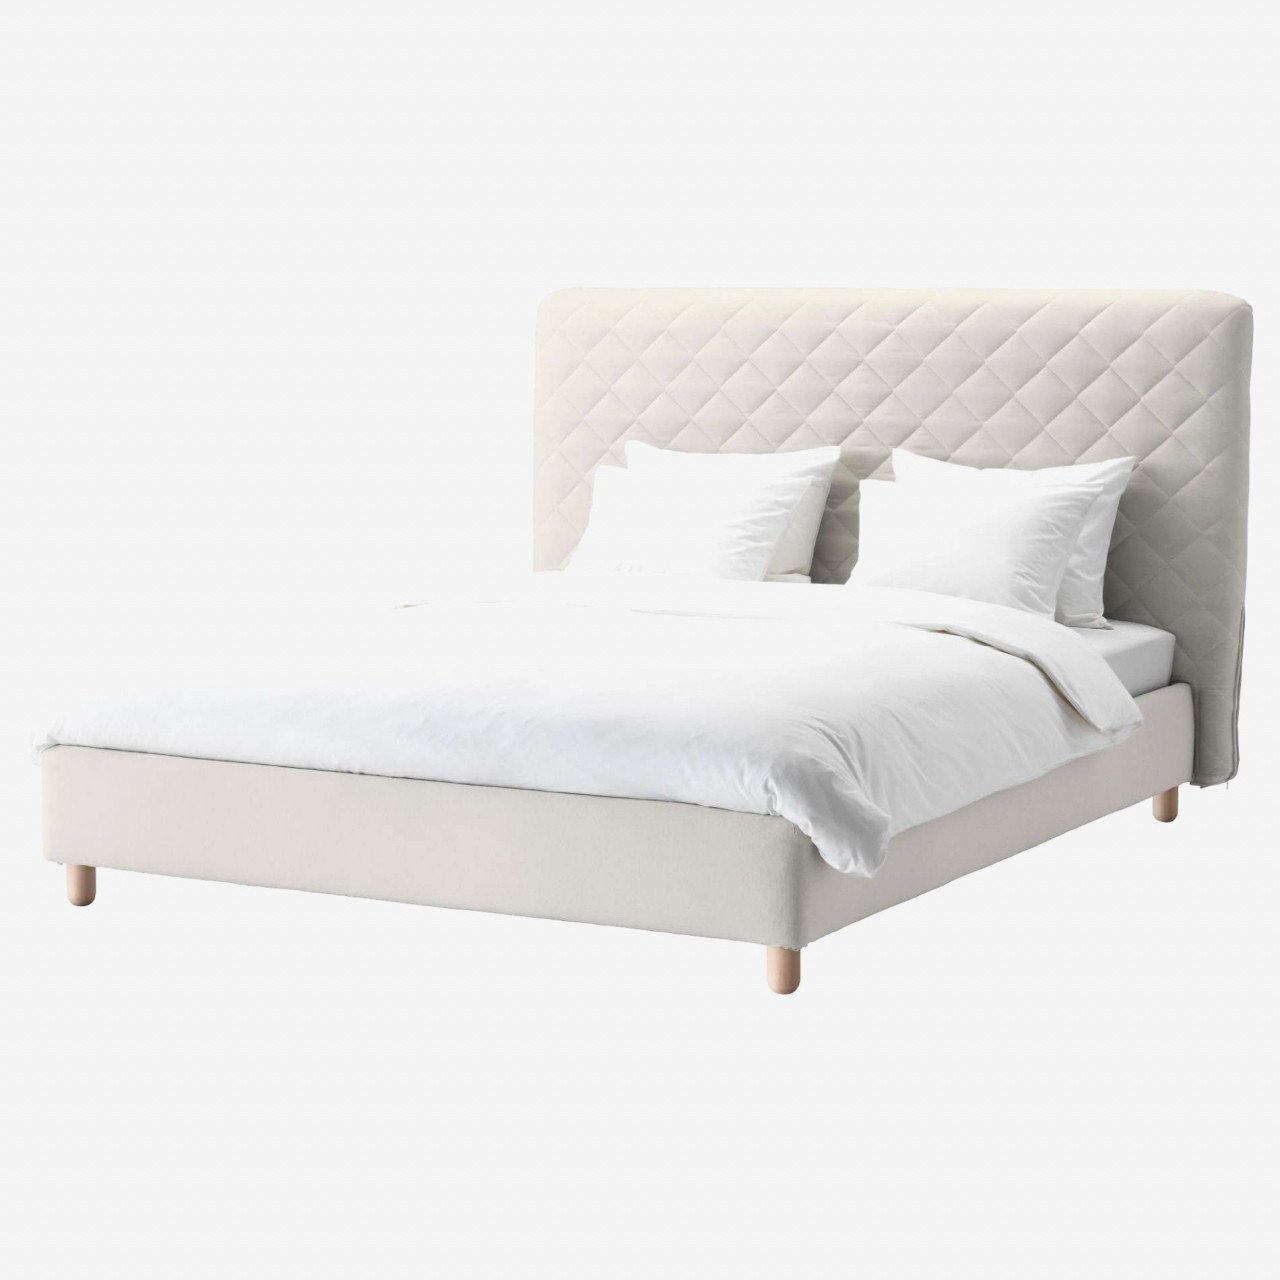 Affordable King Bedroom Set Beautiful King Size Platform Bed Plans — Procura Home Blog